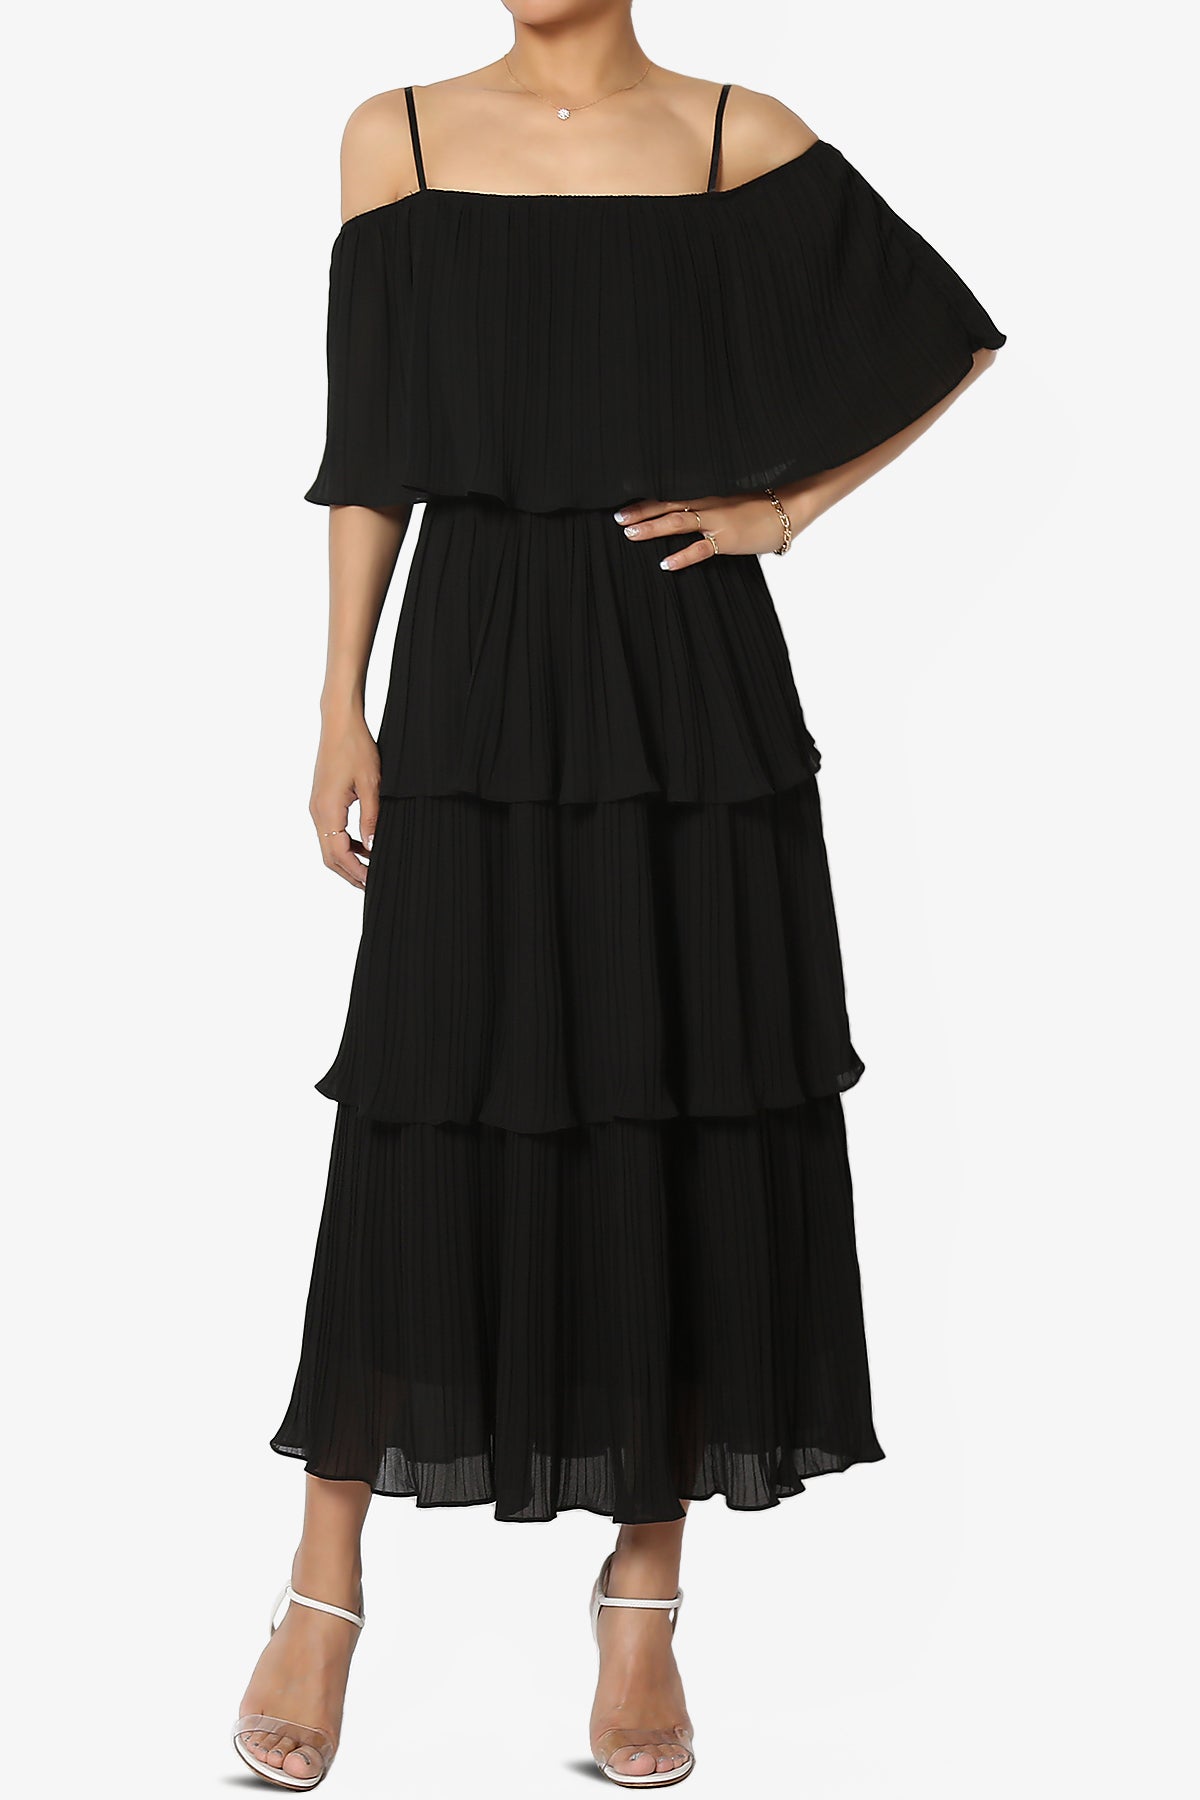 Kye Off Shoulder Tiered Dress in Black